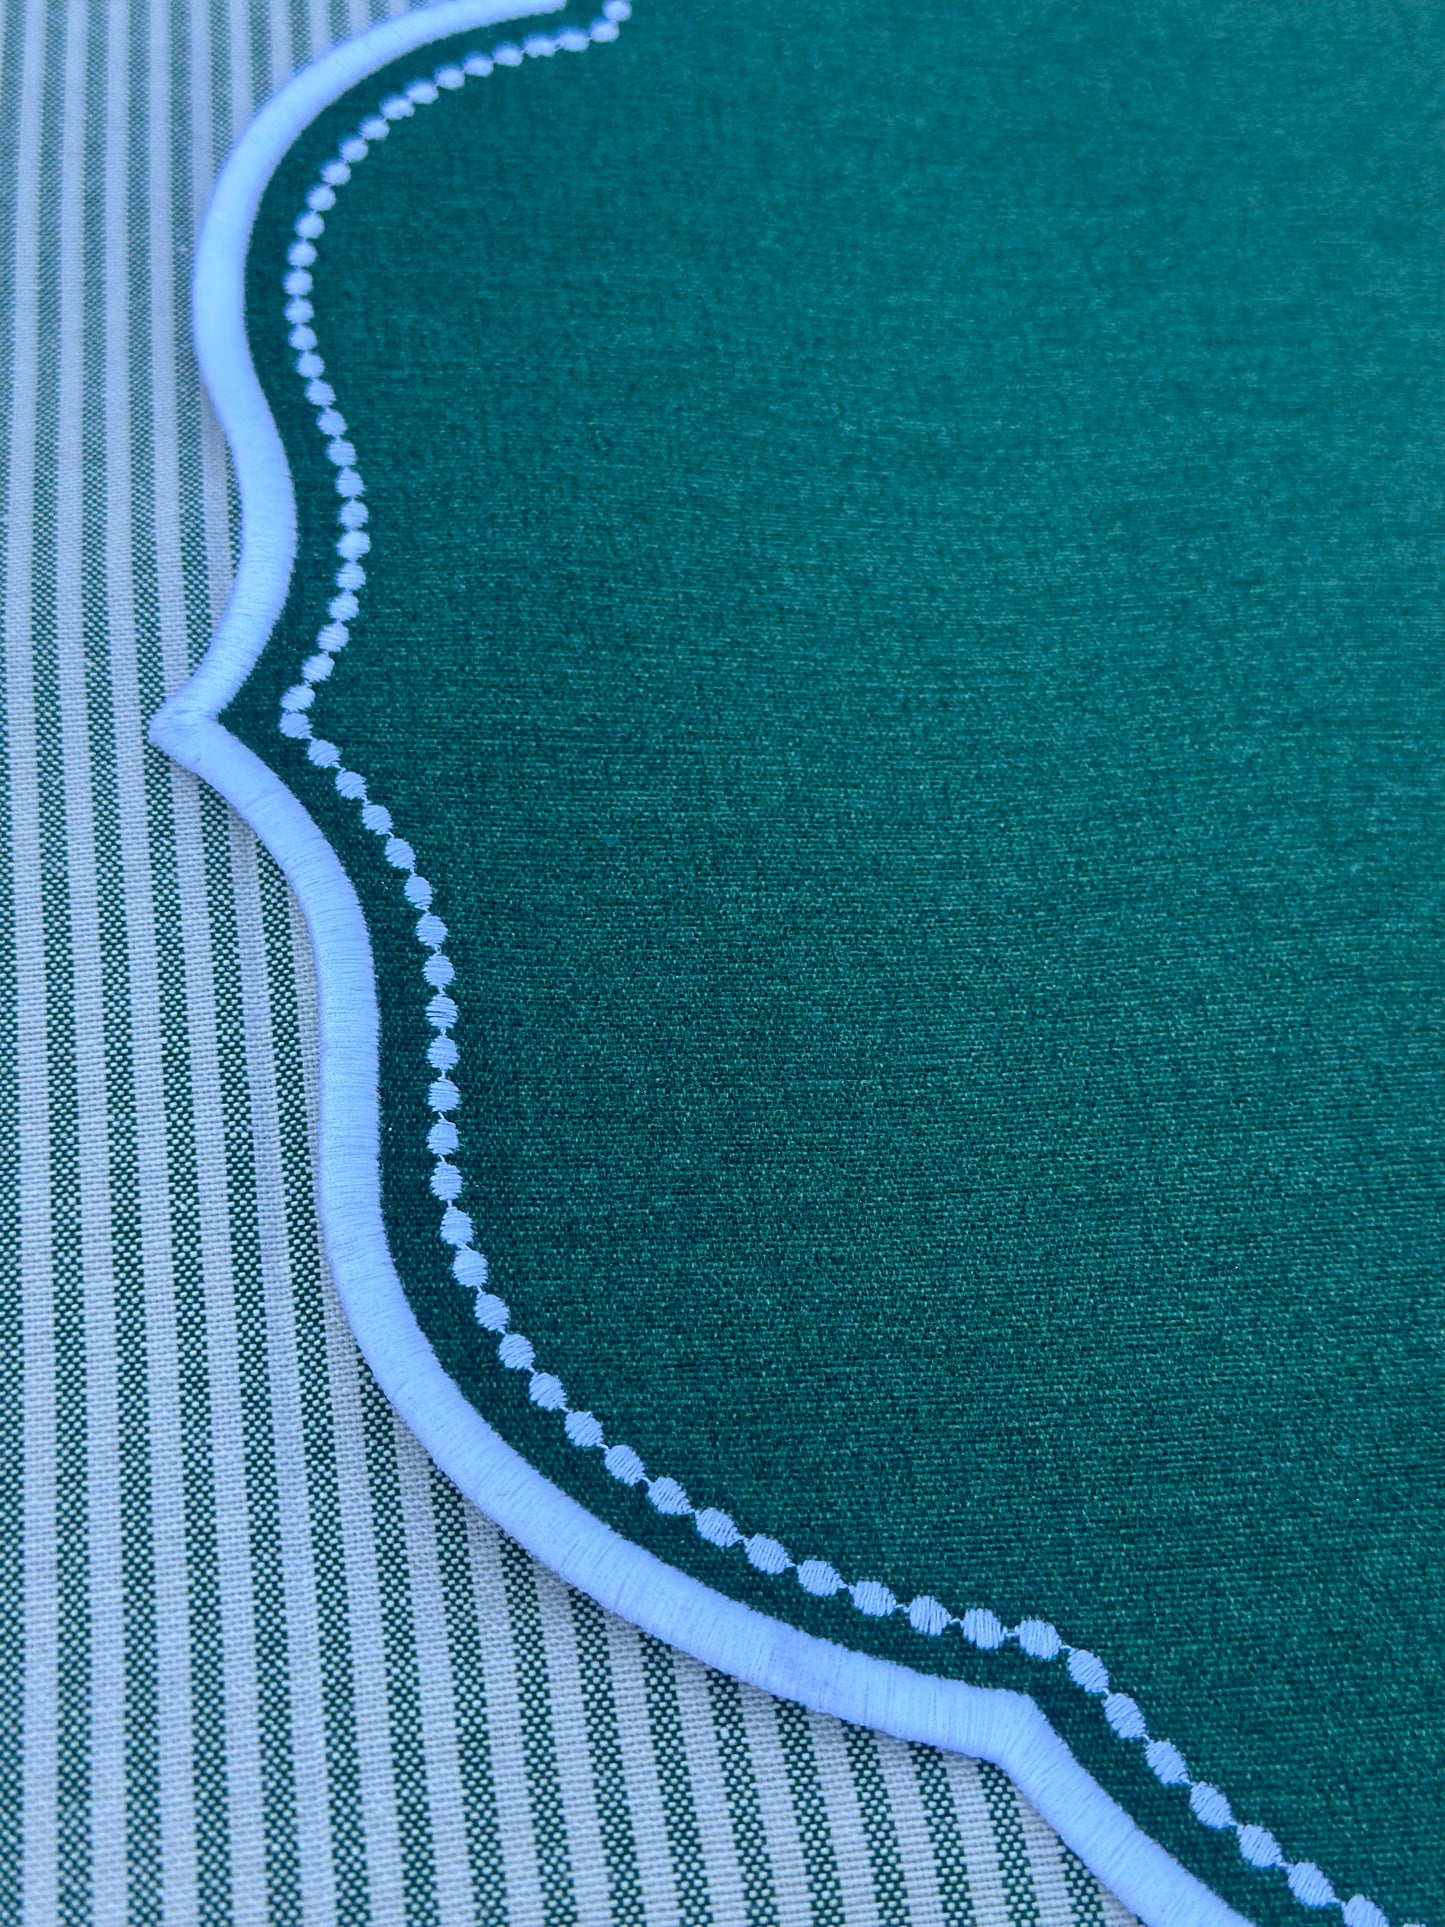 Tovaglietta Ovale Ricamata Verde/Bianco Idrorepellente